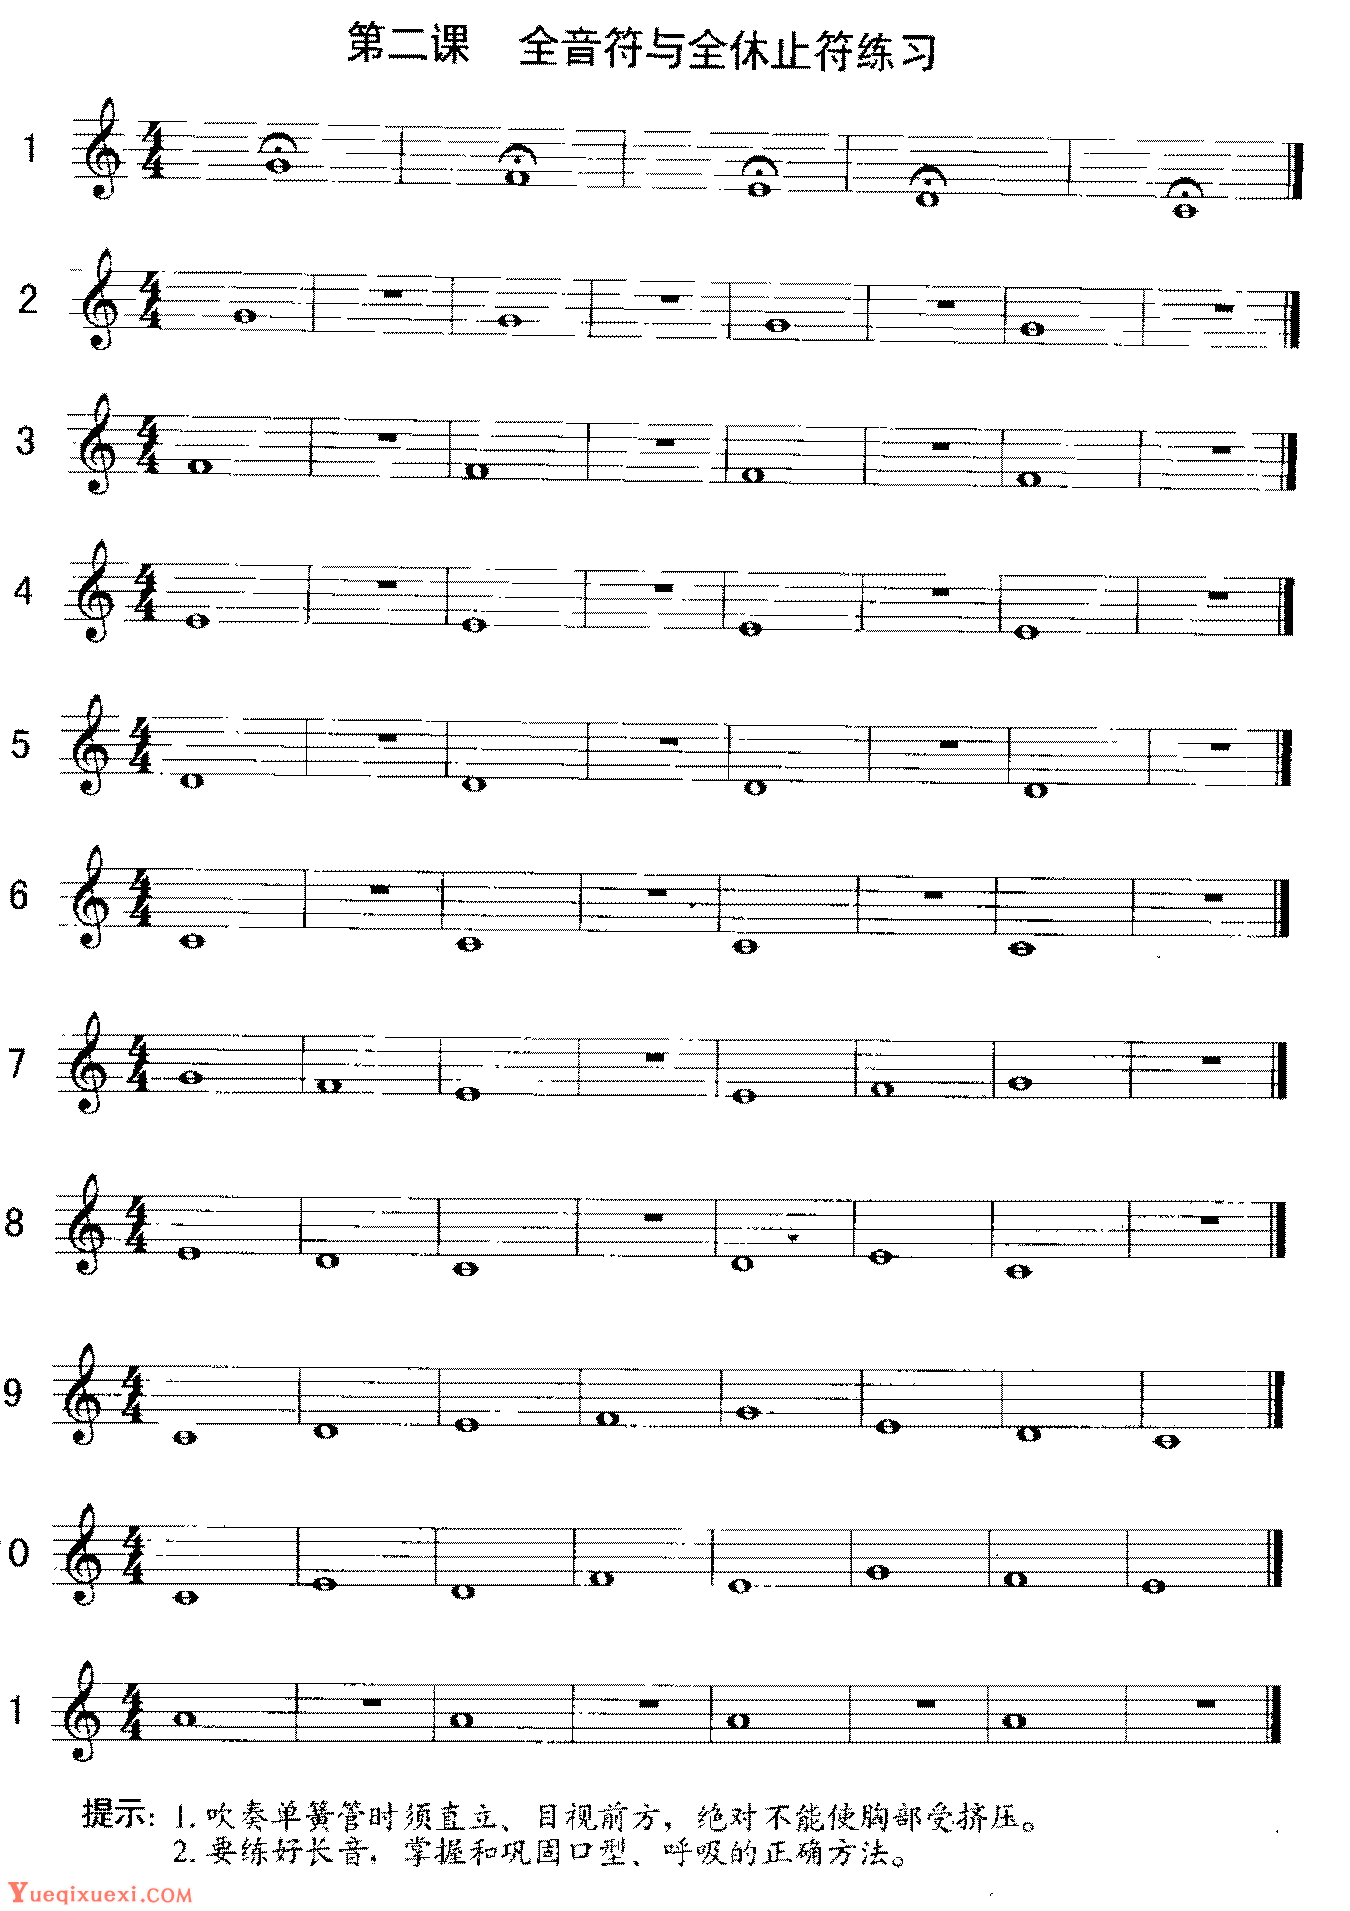 单簧管全音符与全休止符练习